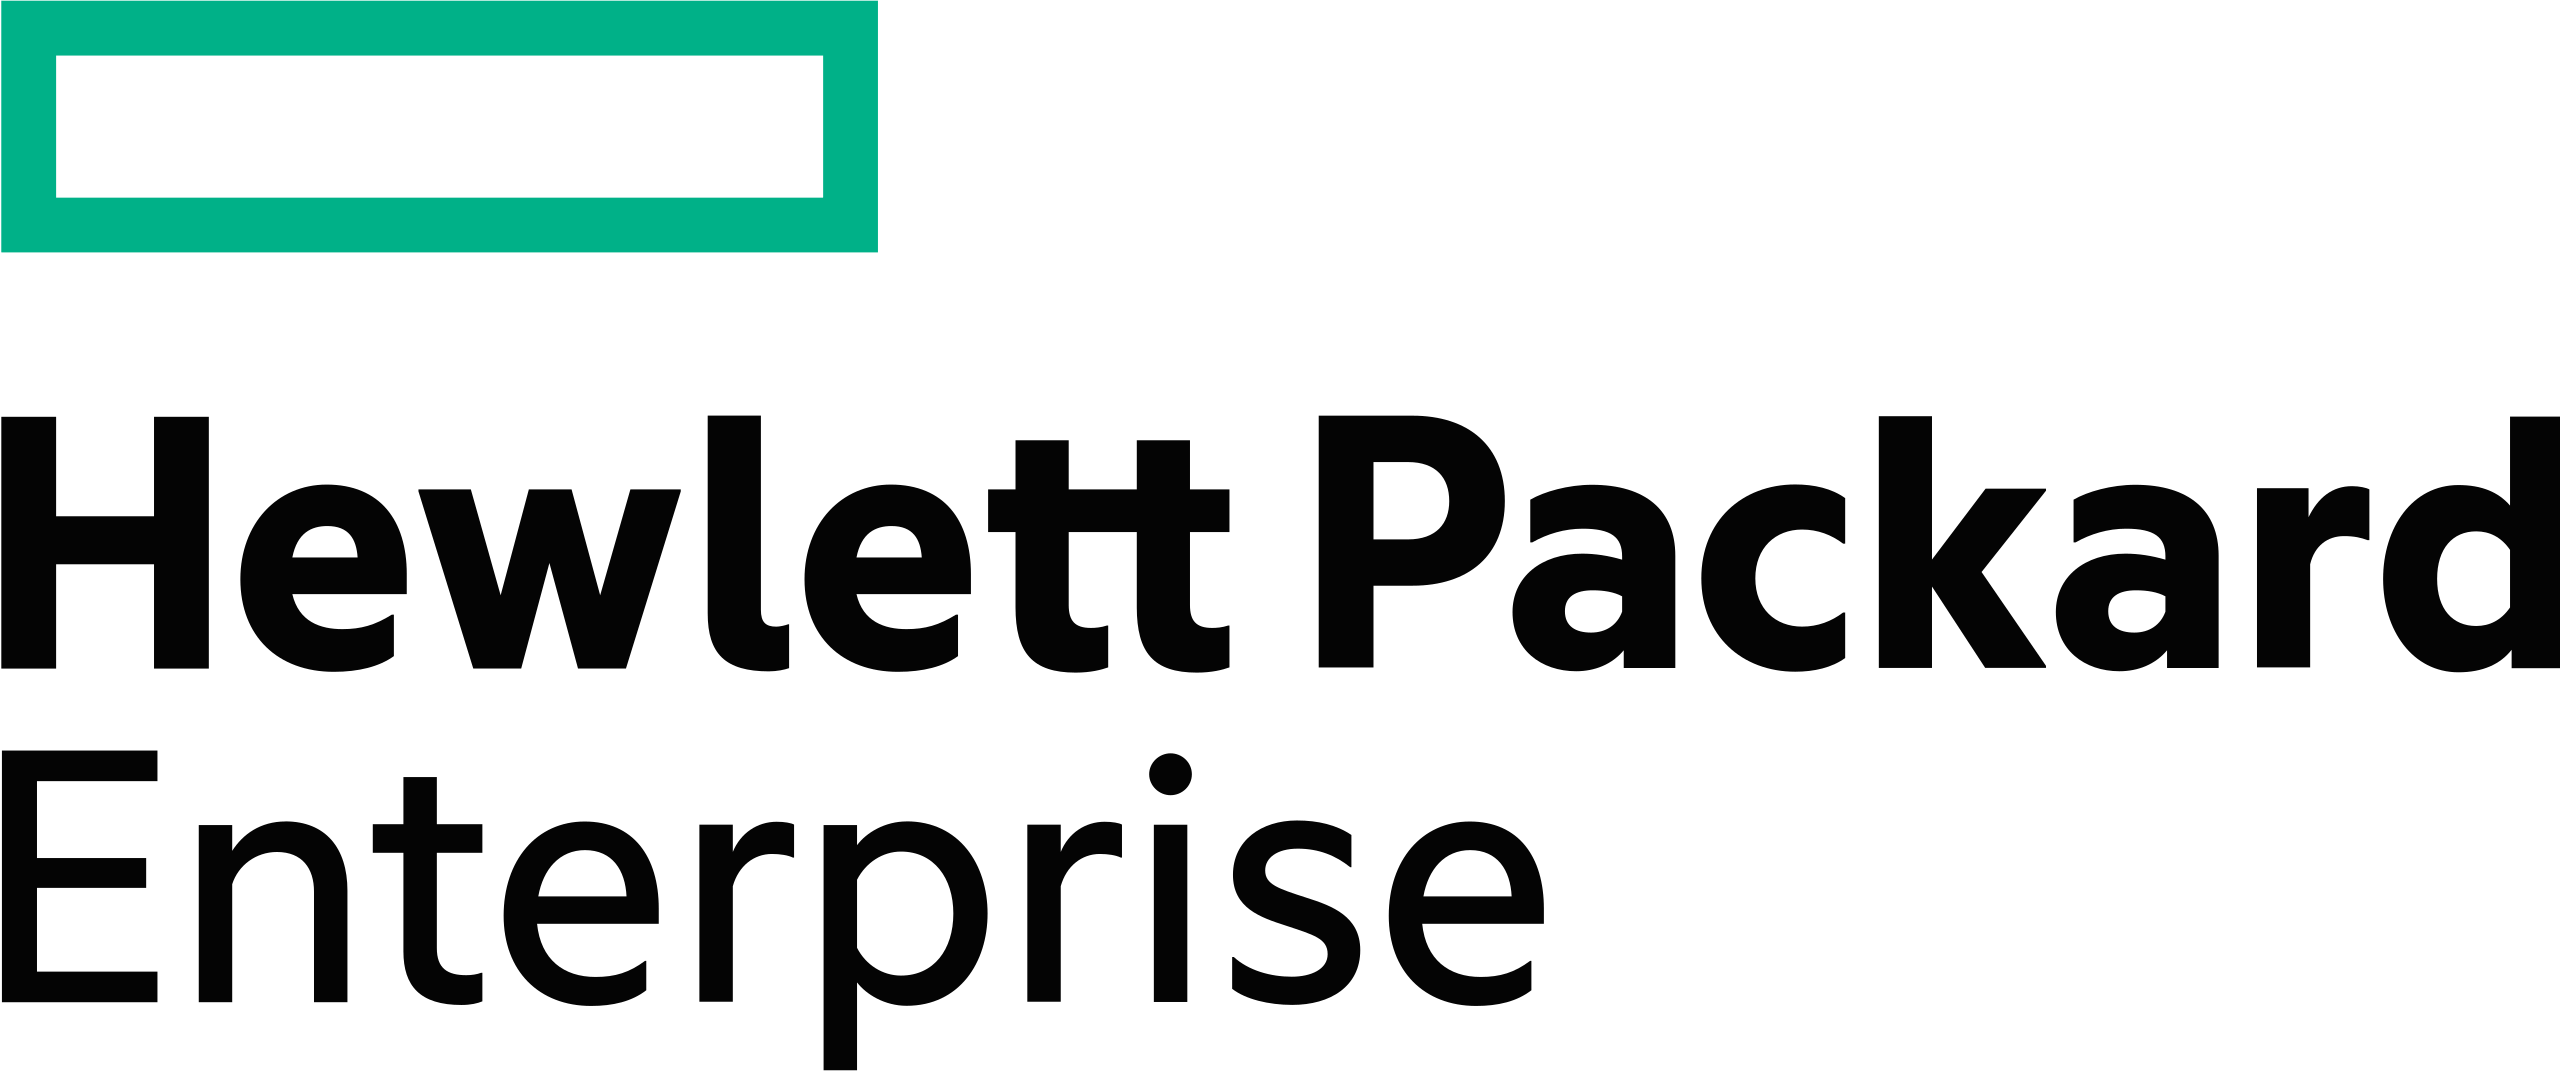 Trusted by Hewlett Packard Enterprise